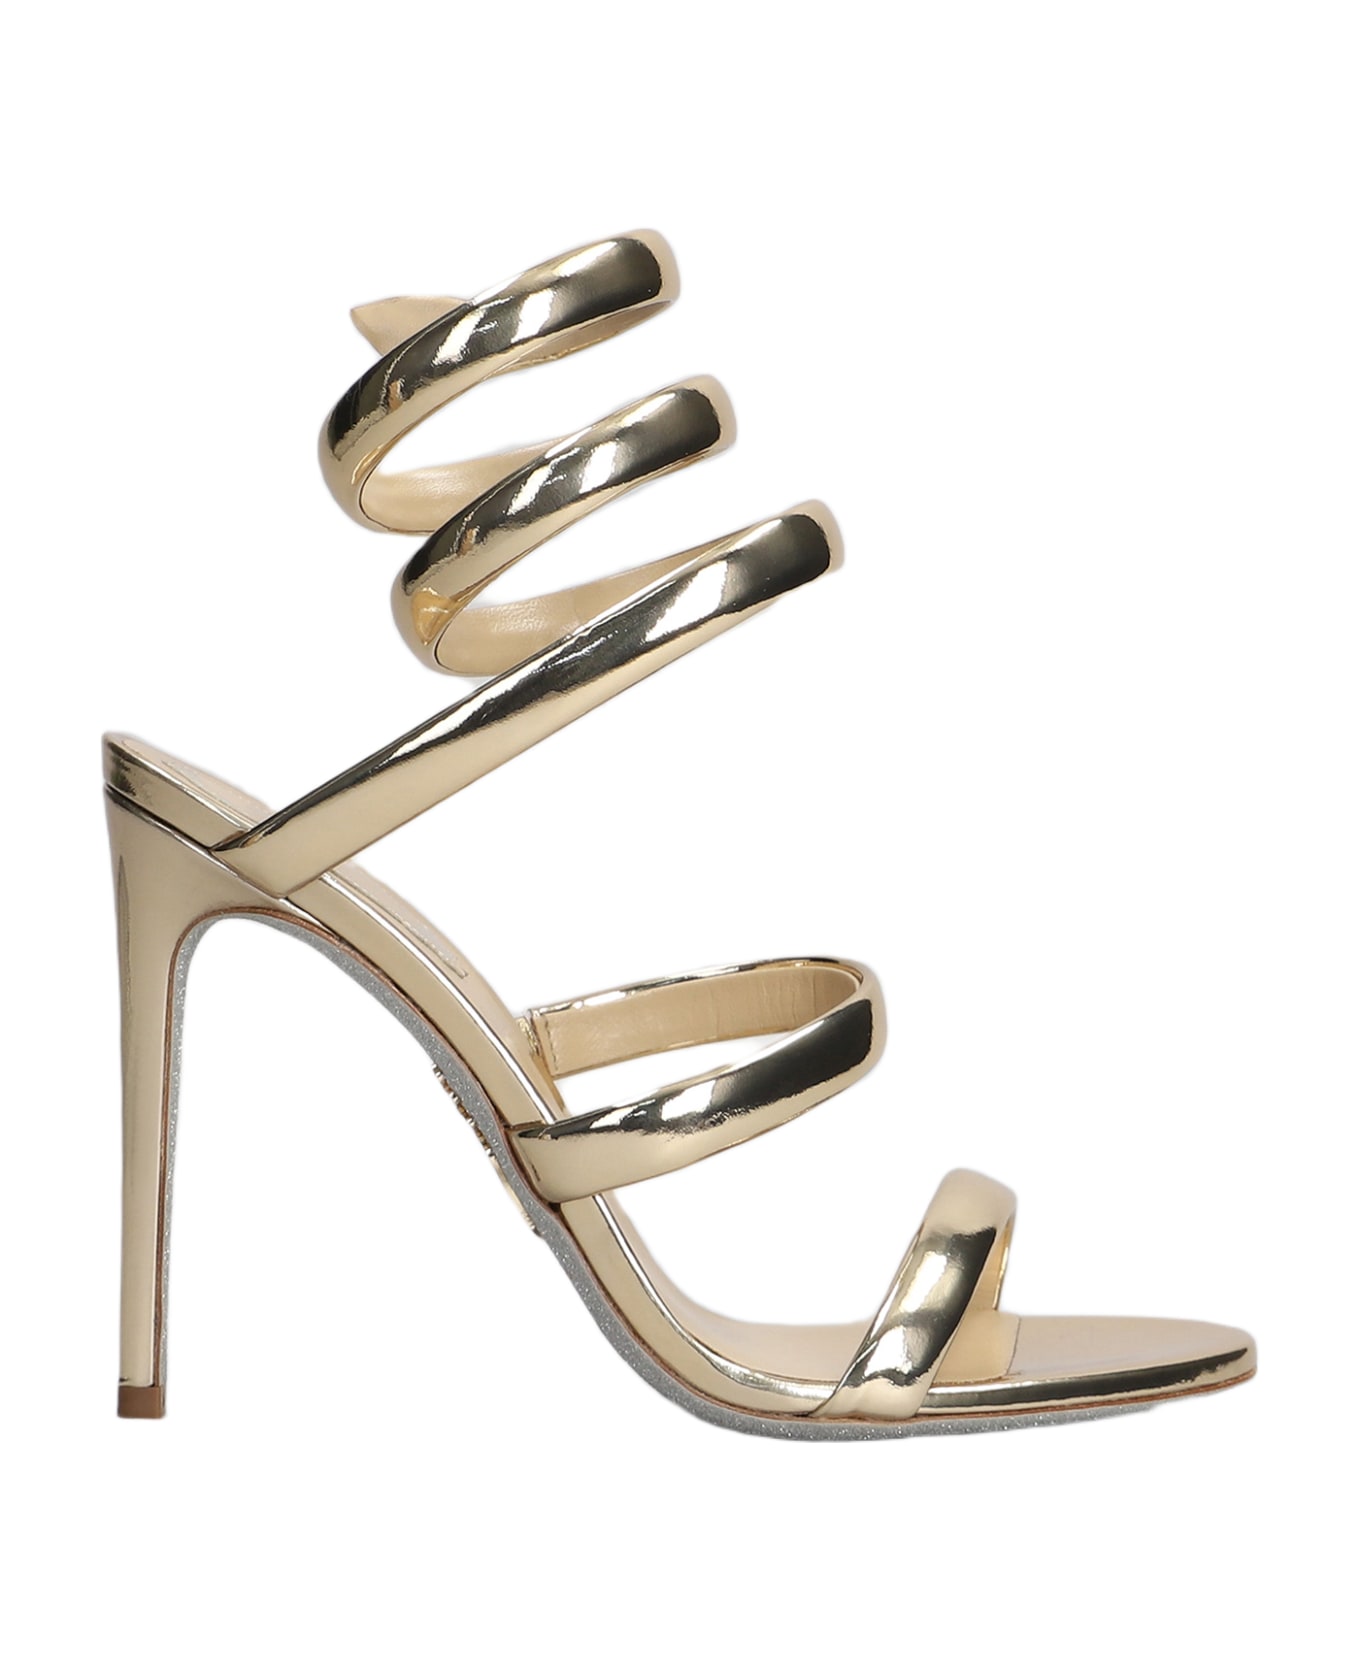 René Caovilla Serpente Sandals In Gold Leather - gold サンダル